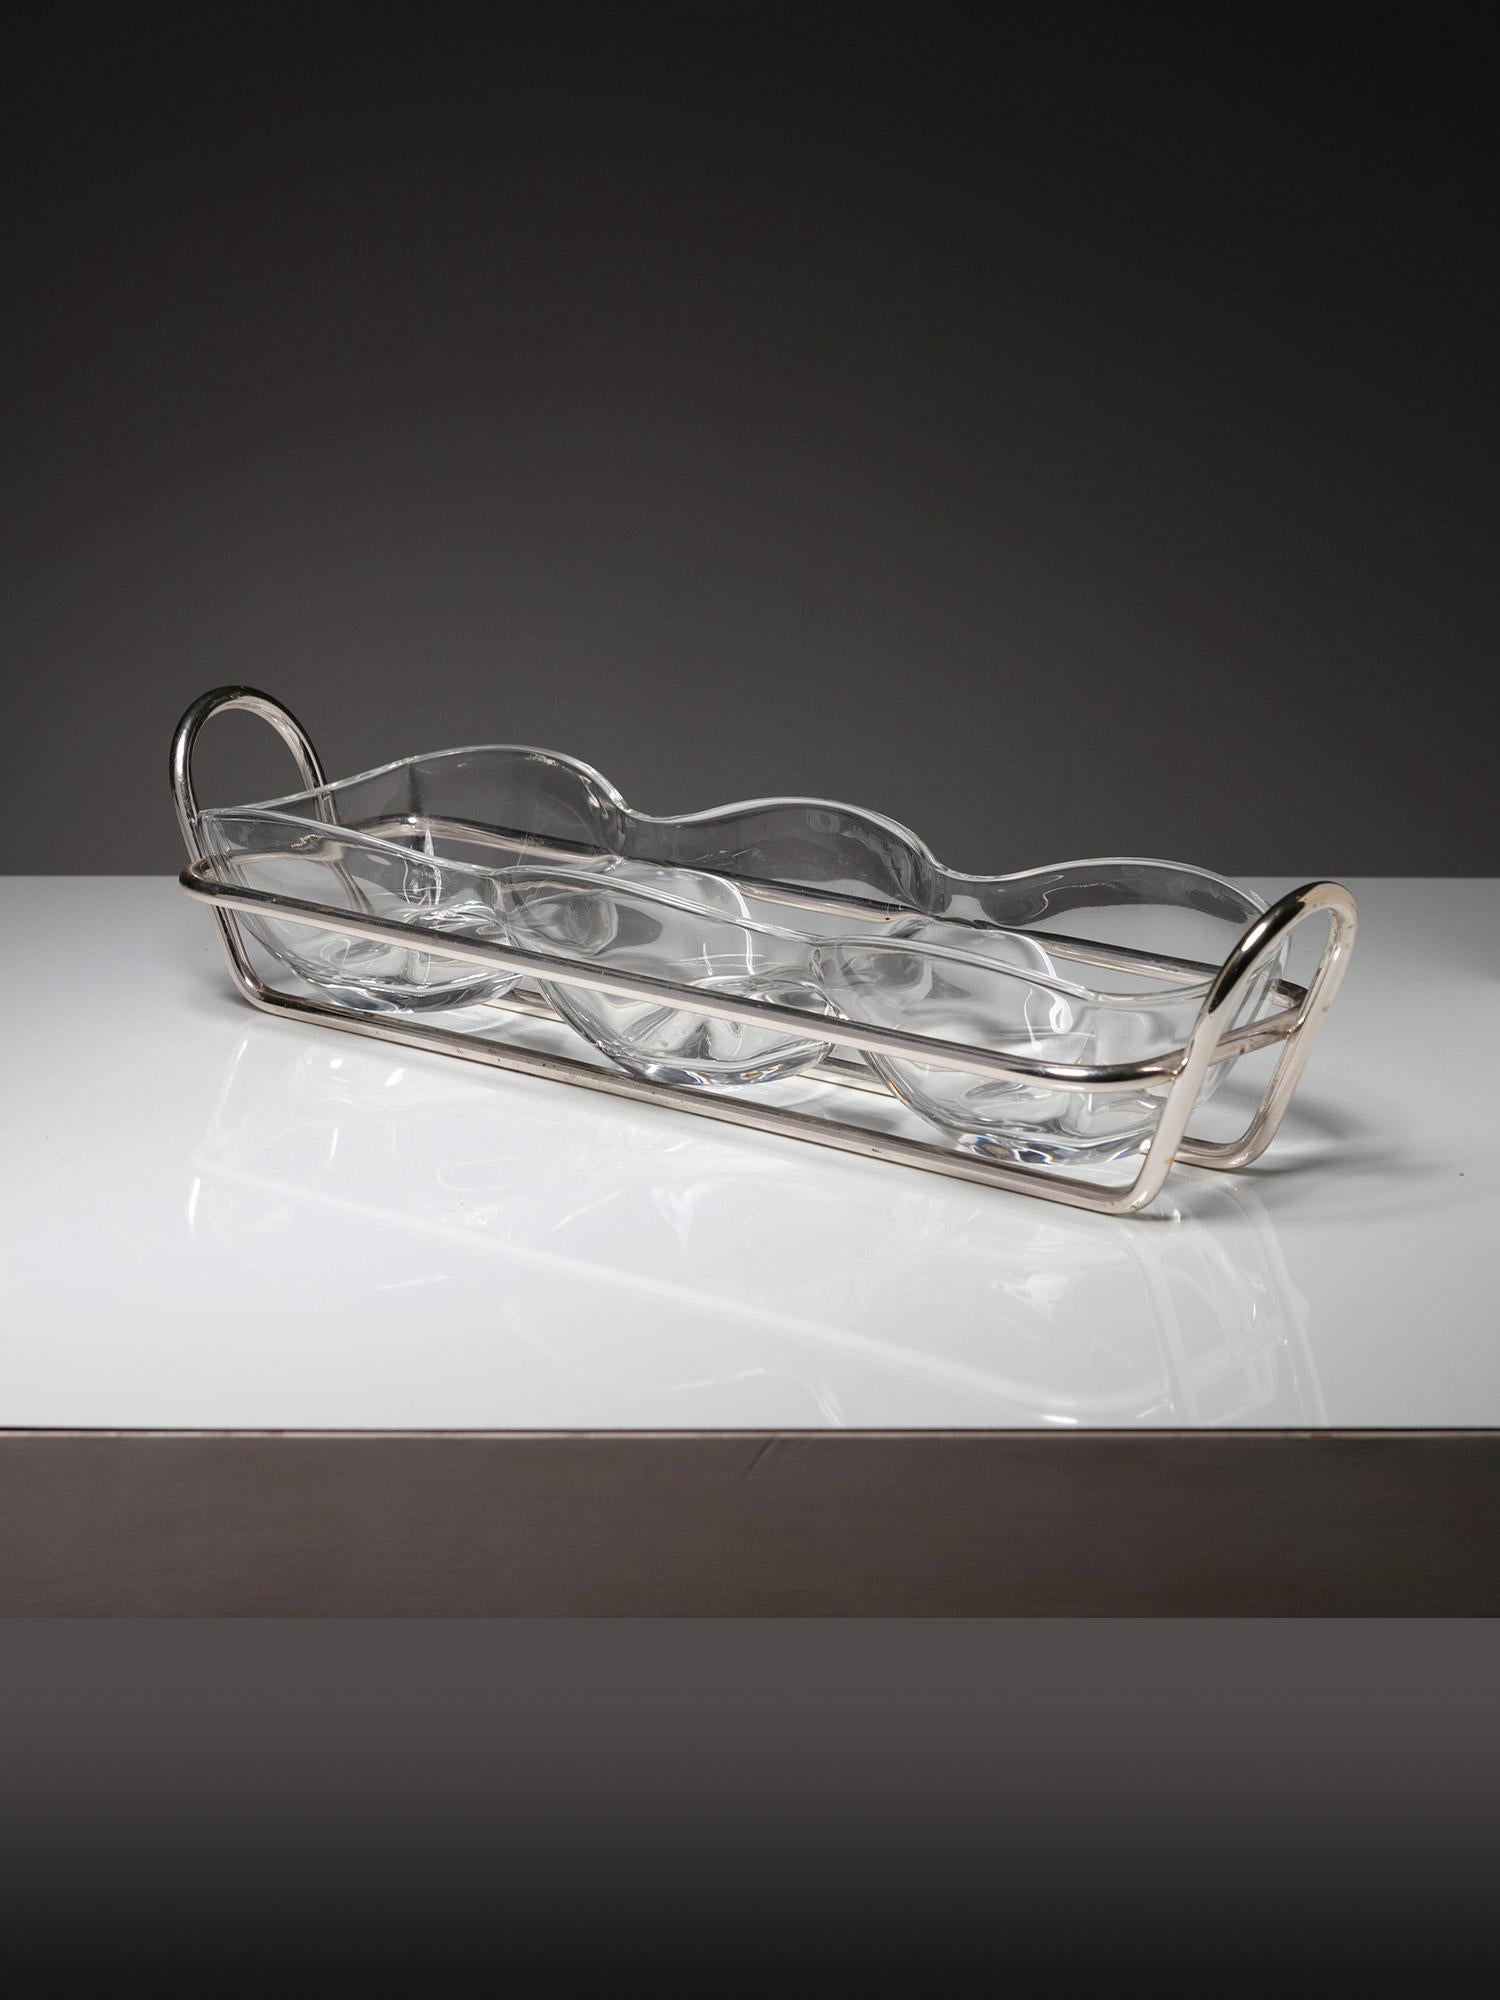 Ein Paar Servierplatten von Lino Sabattini für Sabattini Argenteria.
Dünner versilberter Rahmen mit Glastablett und Schalen.
Die Größe bezieht sich auf das große Stück.